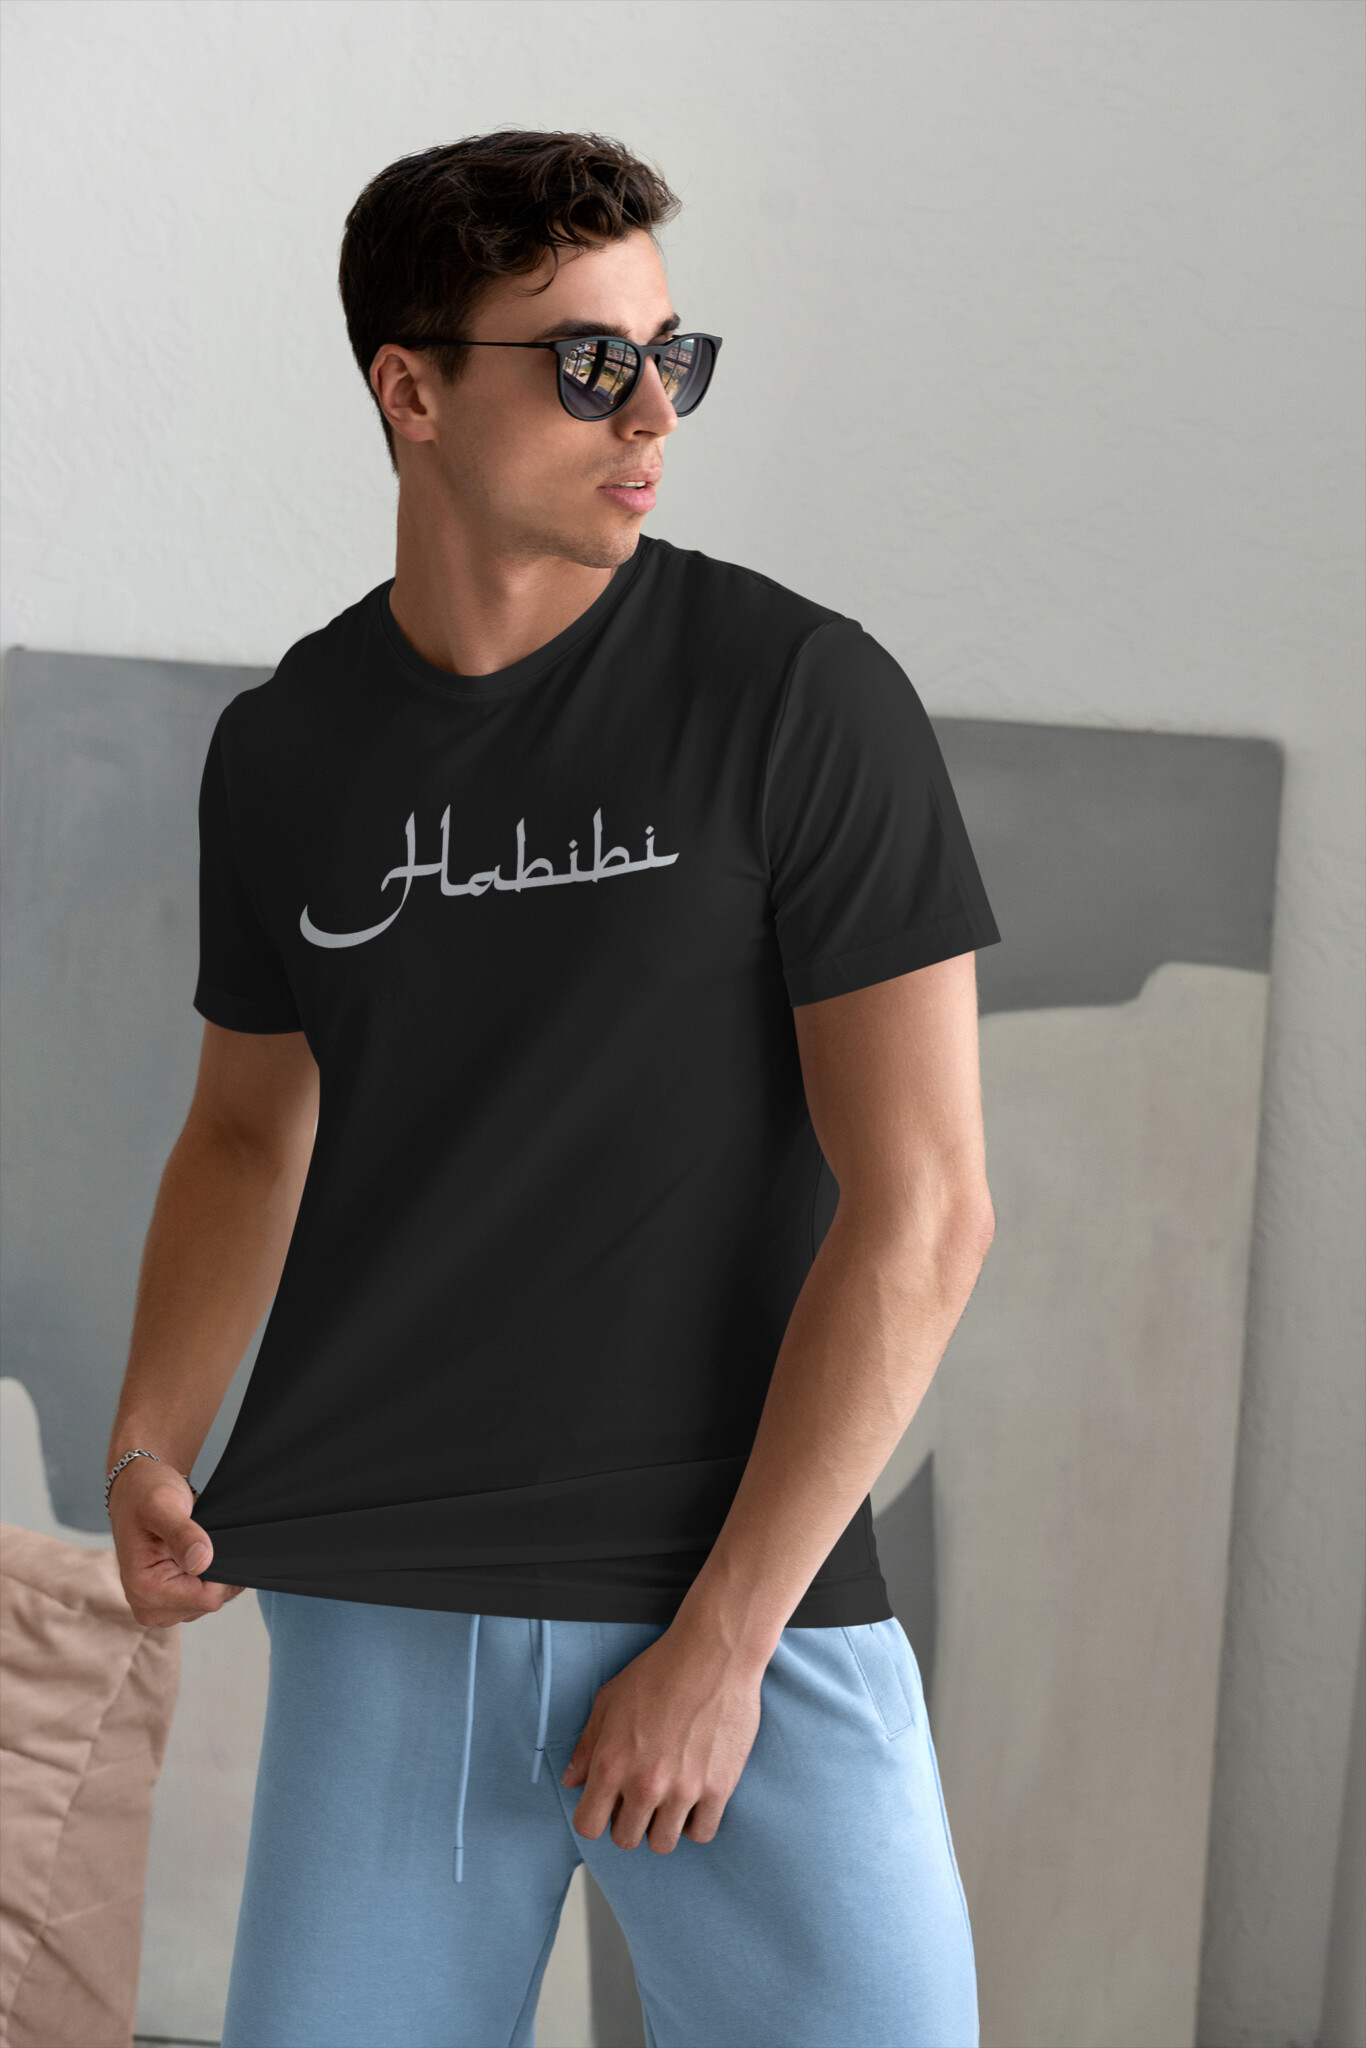 Habibi T-Shirt